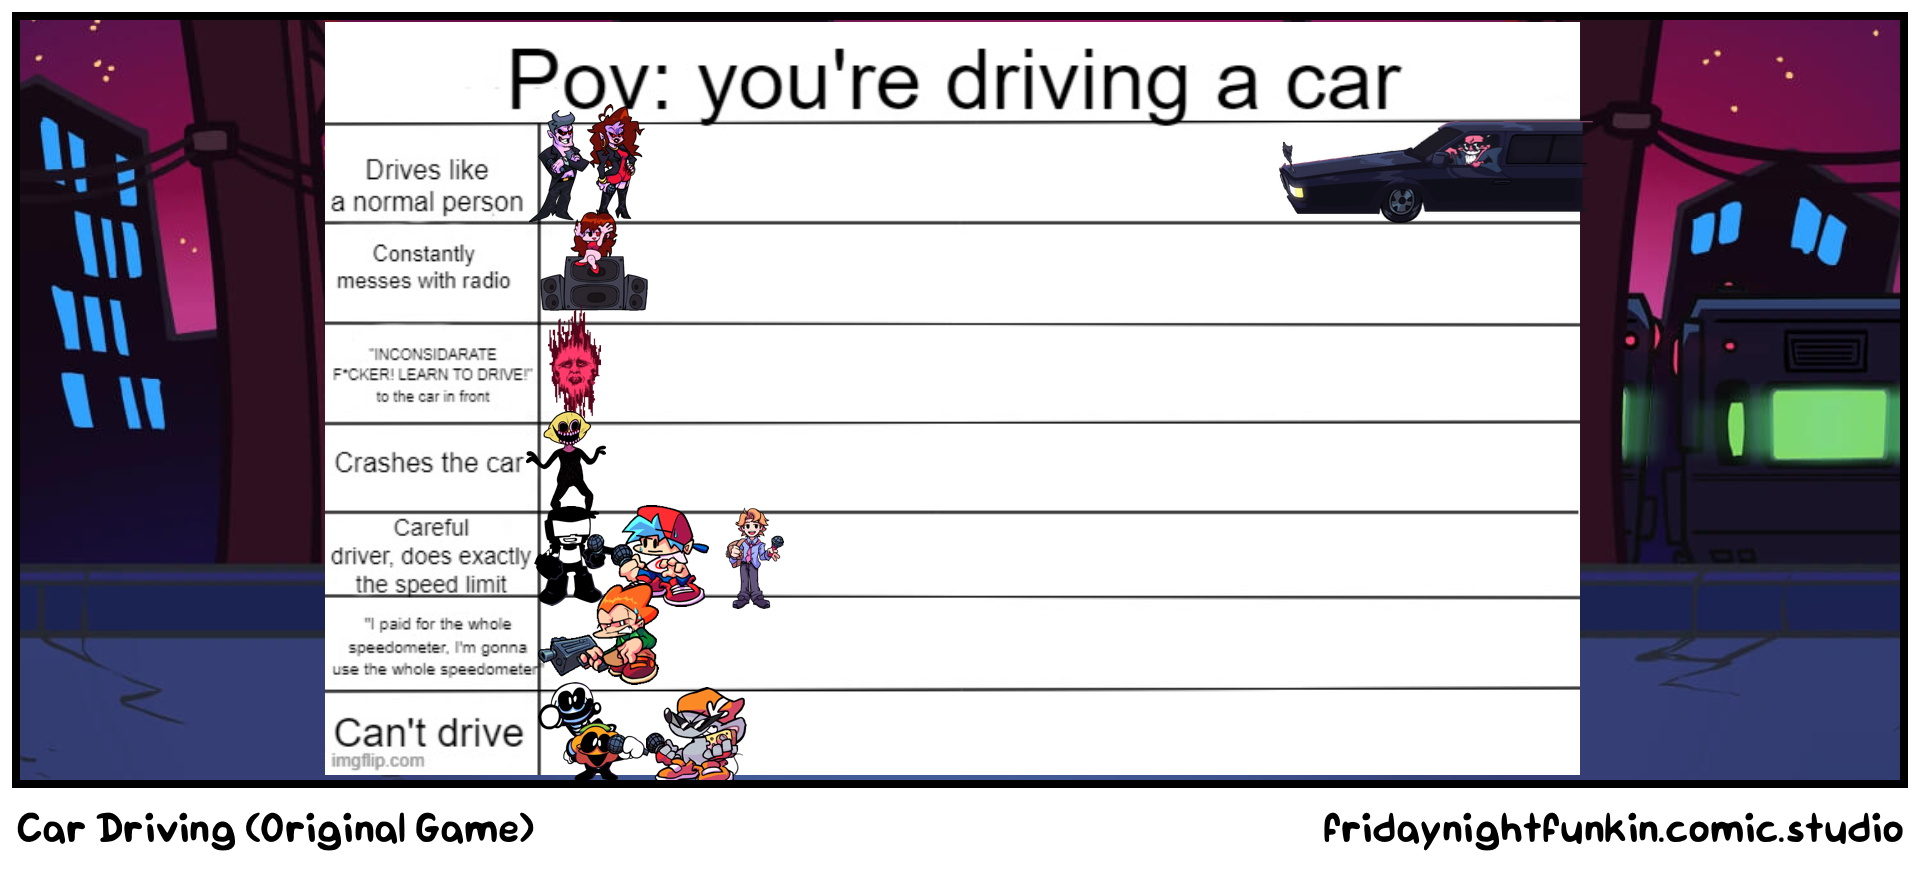 Car Driving (Original Game)